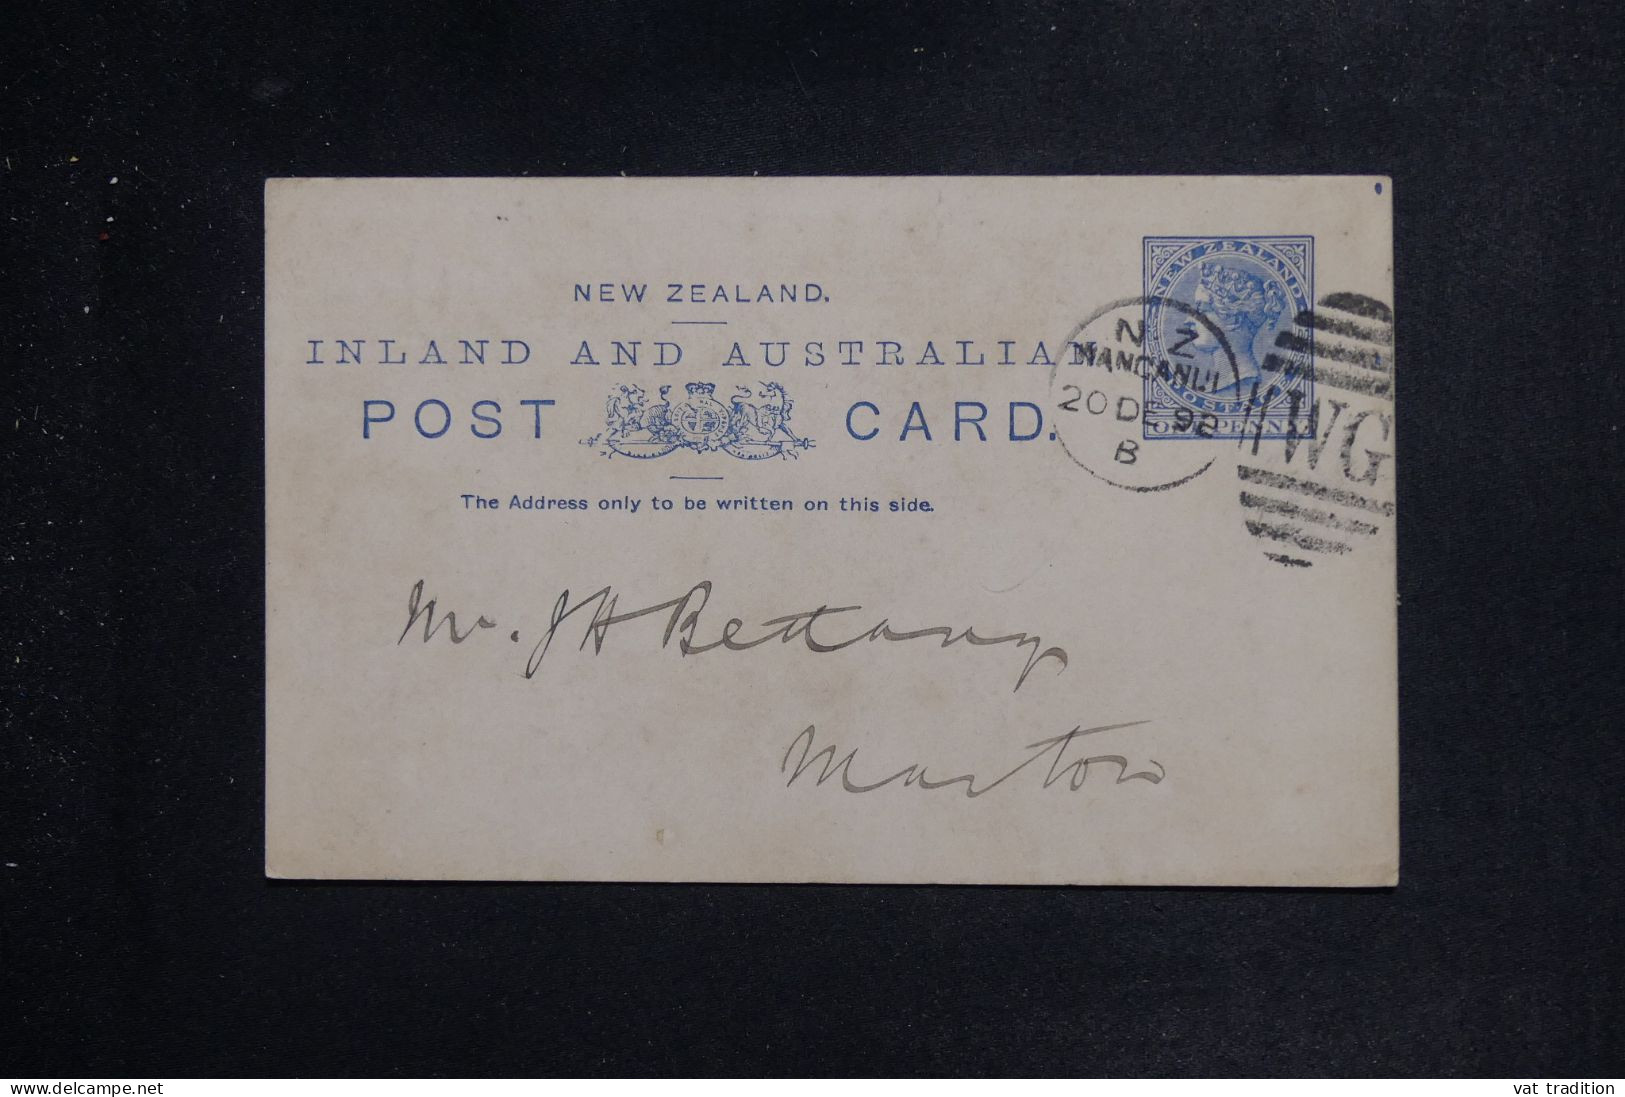 NOUVELLE ZÉLANDE - Entier Postal Type Victoria De Wanganui Pour Marton En 1892 - L 151264 - Storia Postale